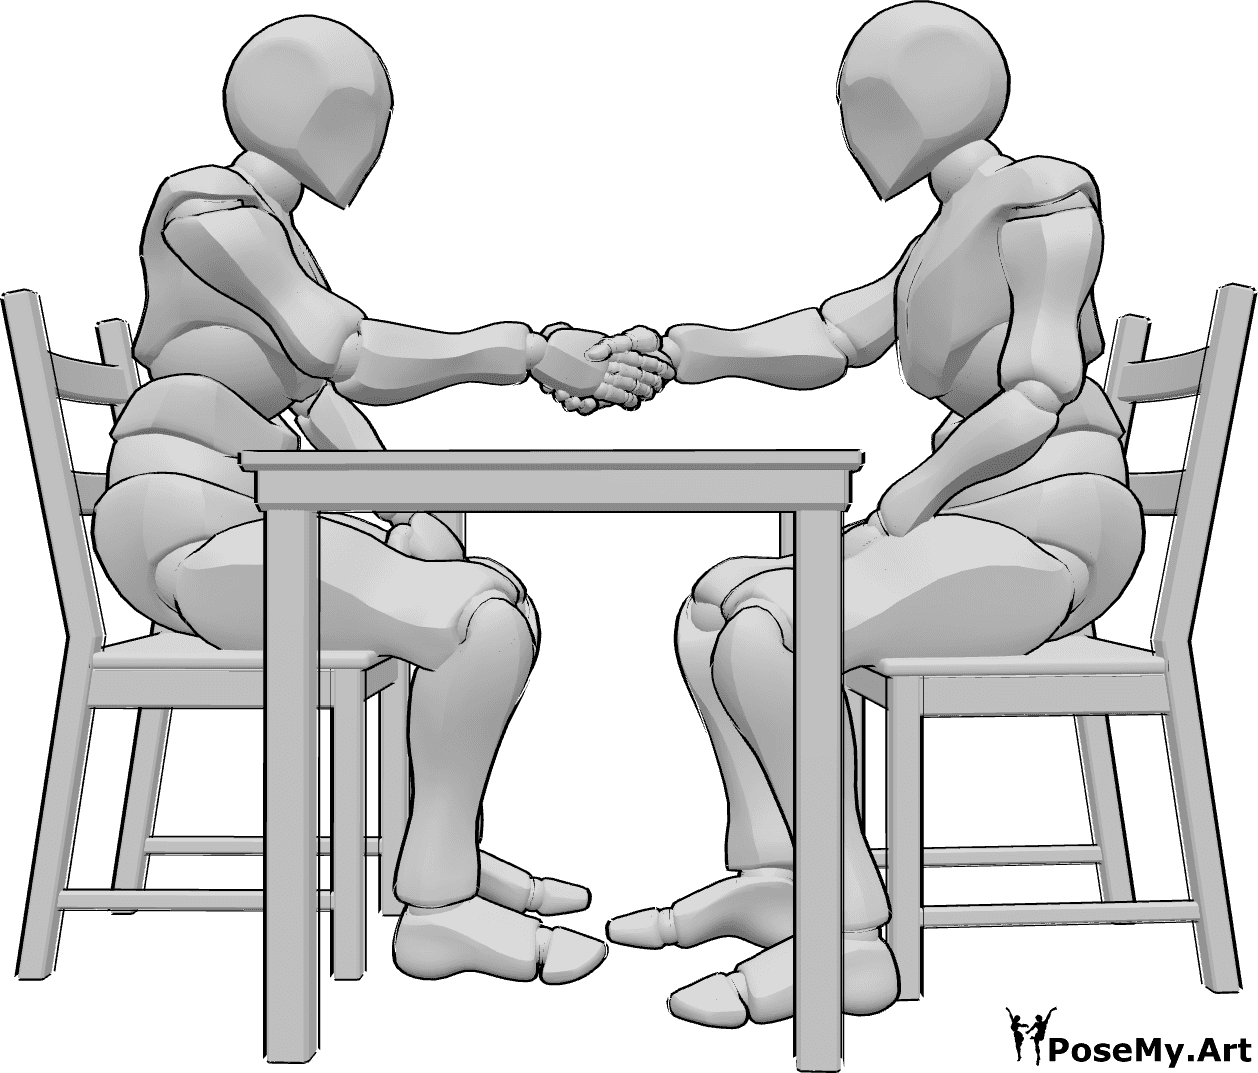 Posen-Referenz- Männliche sitzende Handschlag-Pose - Zwei männliche Personen sitzen sich an einem Tisch gegenüber und schütteln sich die Hände.